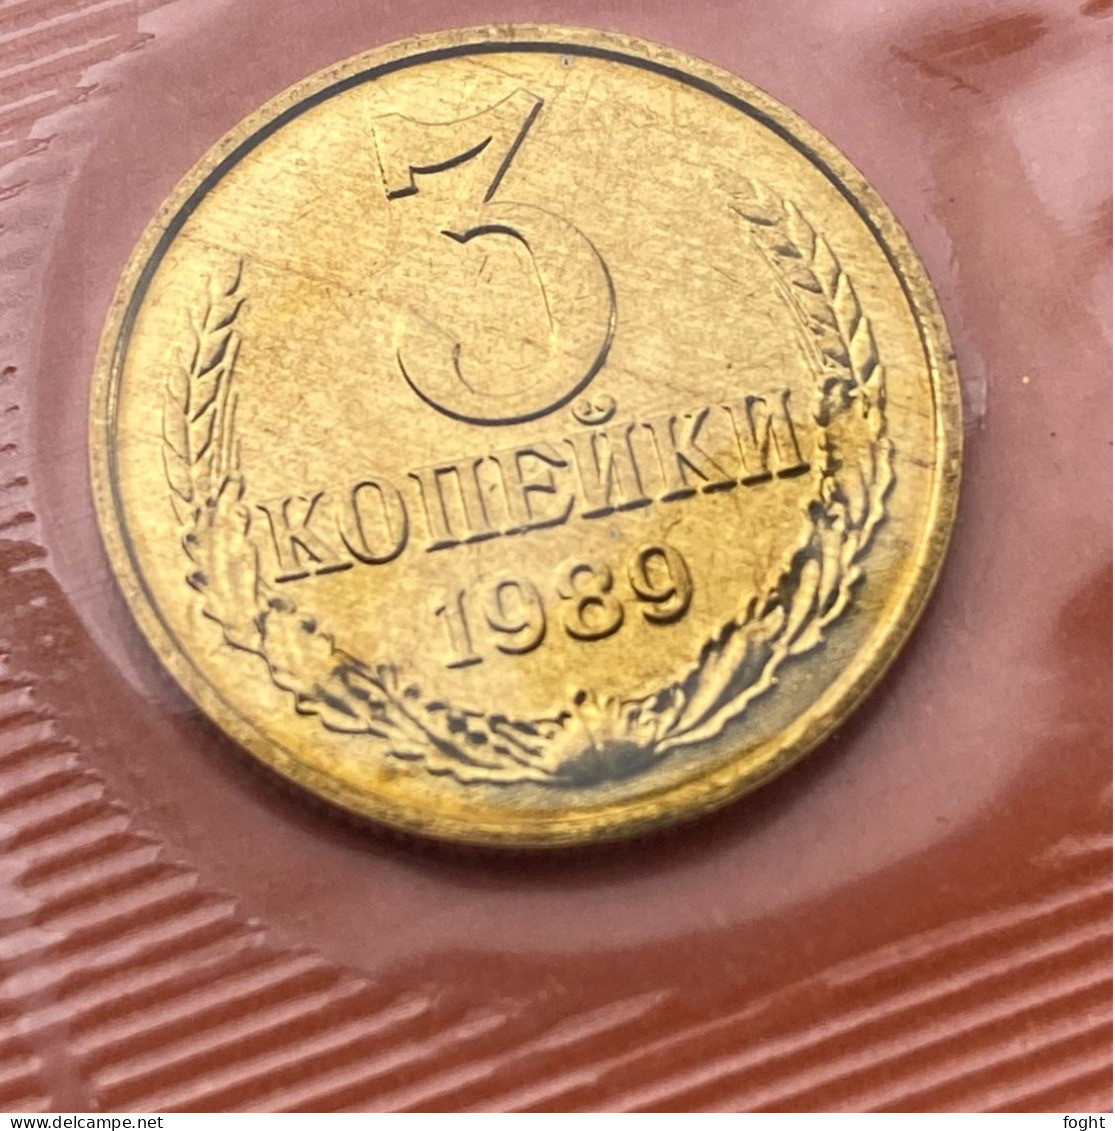 1989 ММД Russia coins(9) set